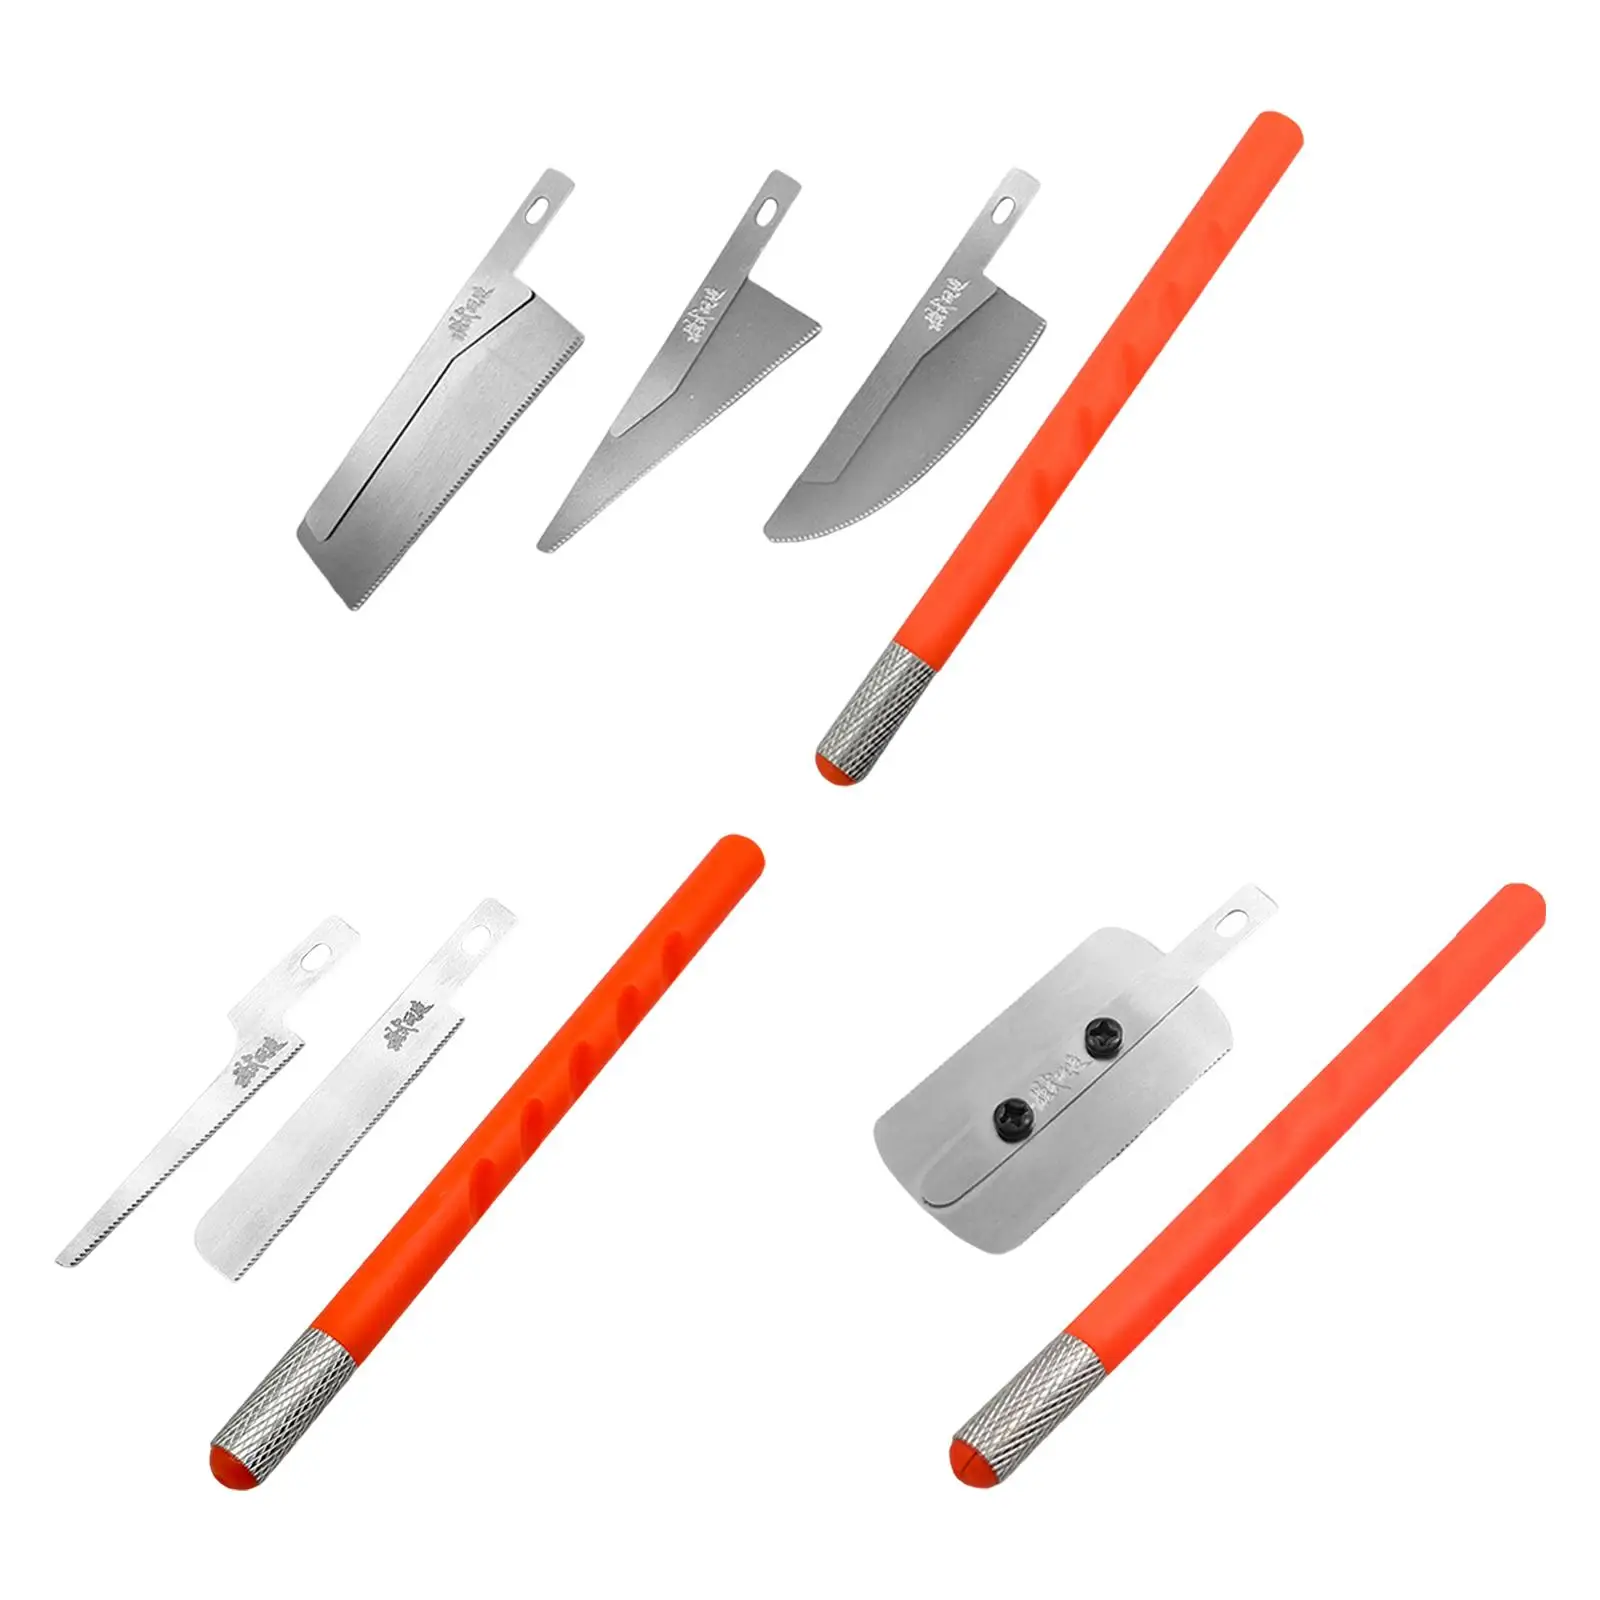 Mini Model Making Tool Universal Metal Multipurpose DIY Accessories Hand Tool for Professional